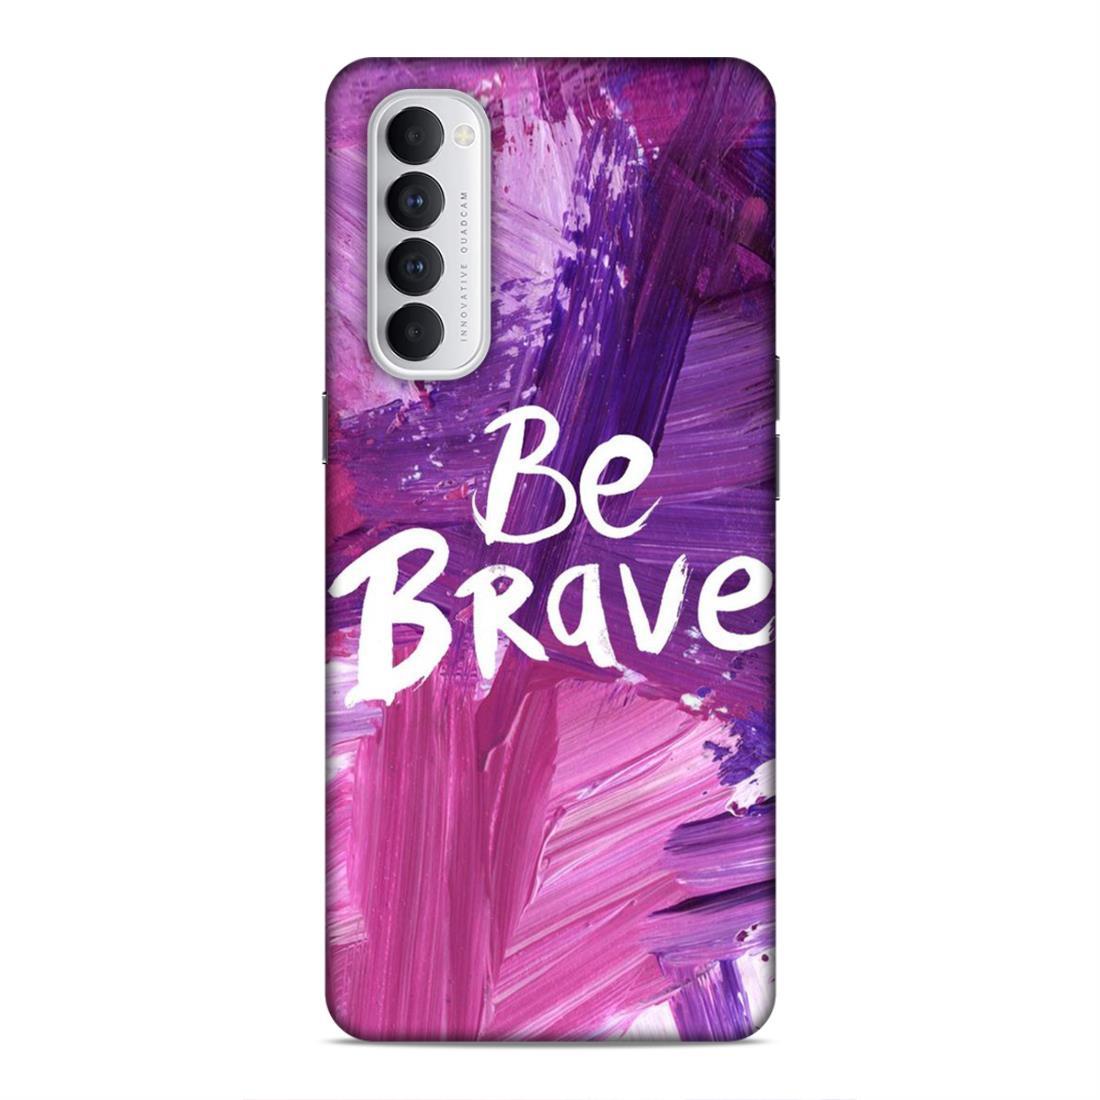 Be Brave Oppo Reno 4 Pro Mobile Back Cover